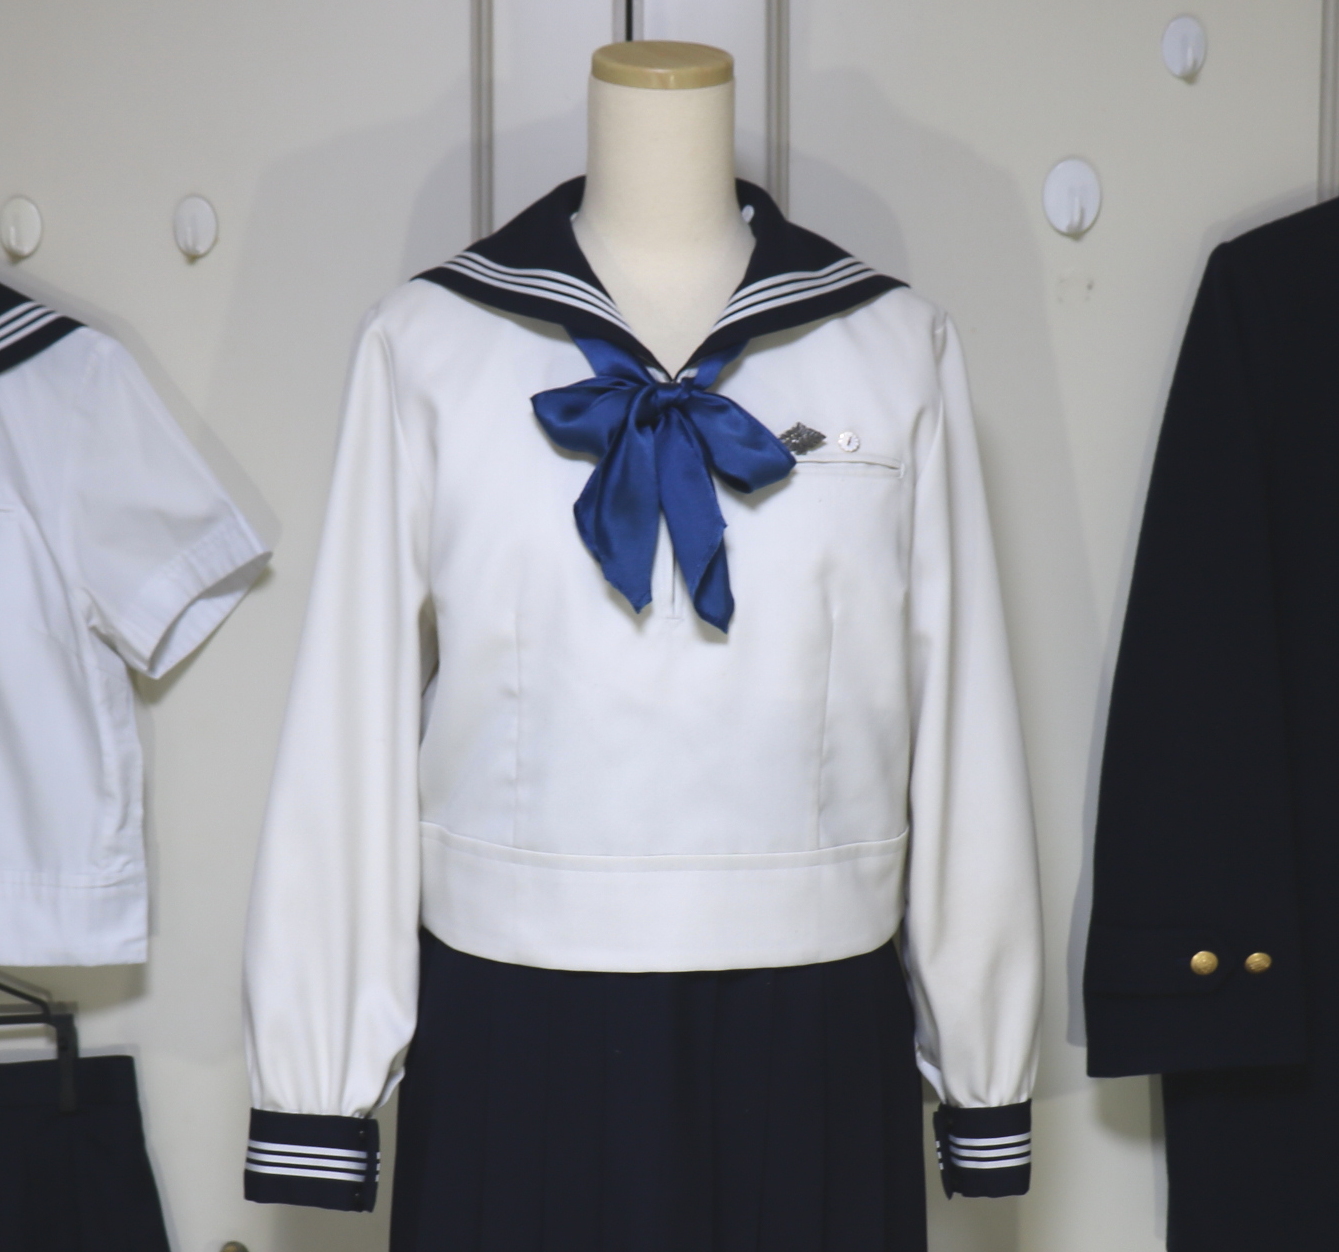 東京都渋谷区 東京女学館高等学校 指定シルク紺色100バータイスカーフ 予備使用品 2020年式美品を買取させていただきました | 制服買取